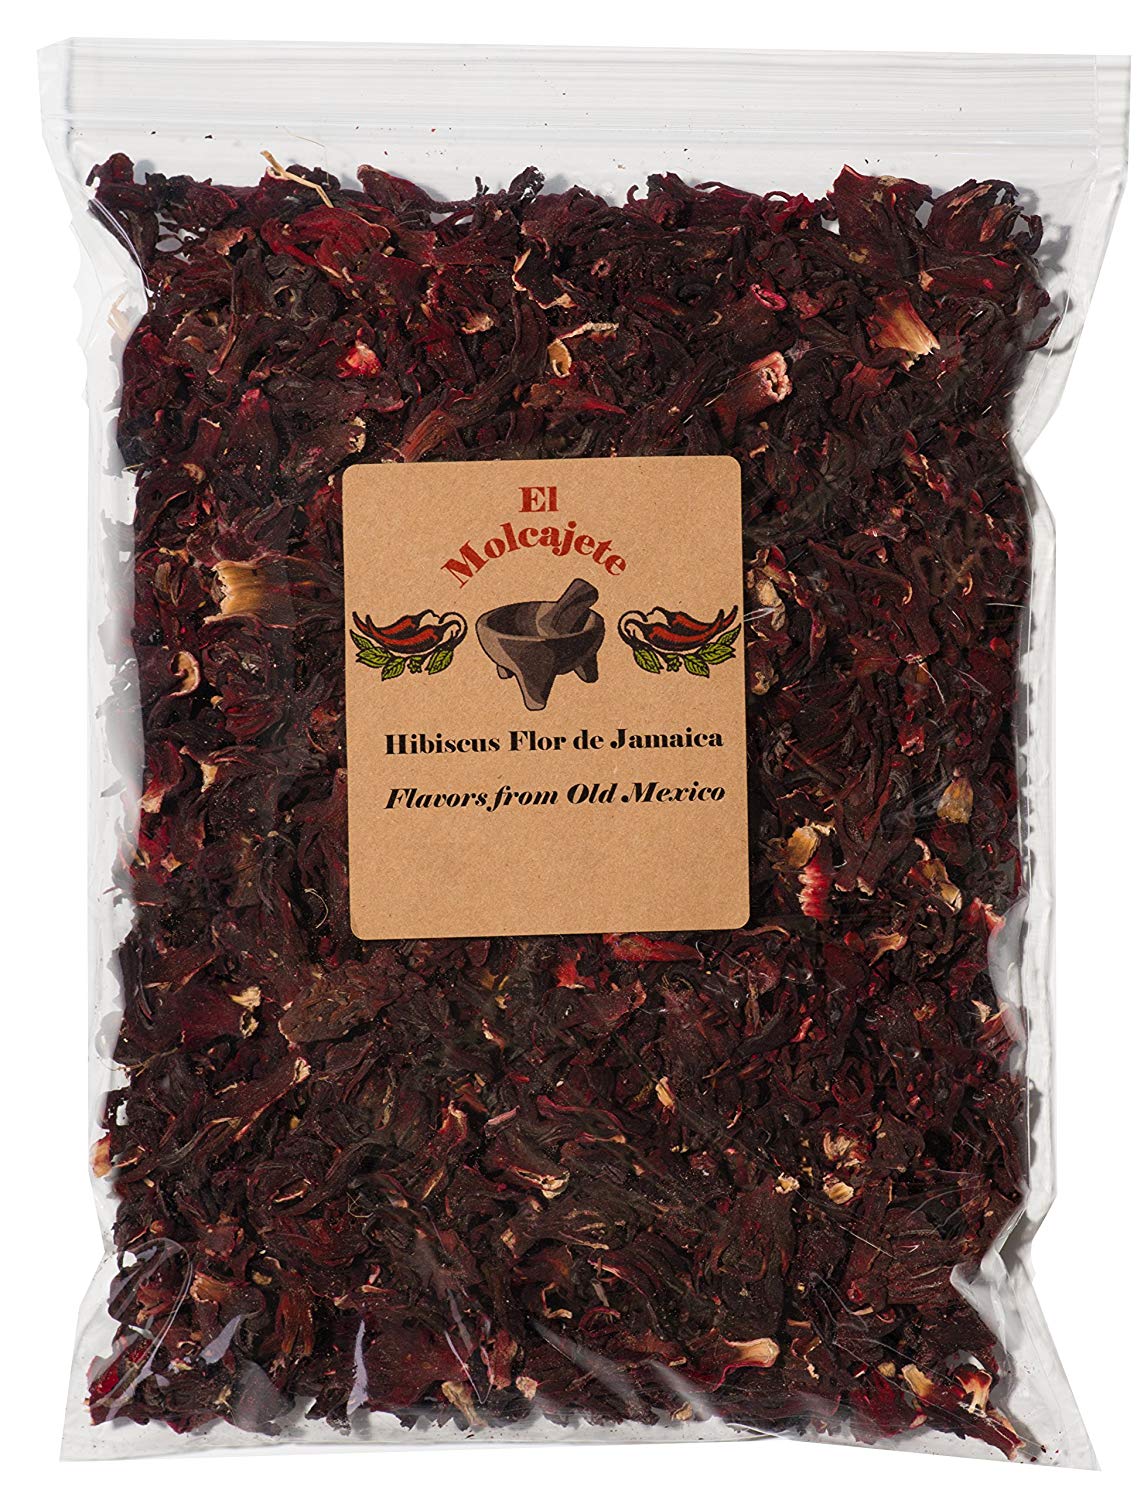 package of hibiscus tea